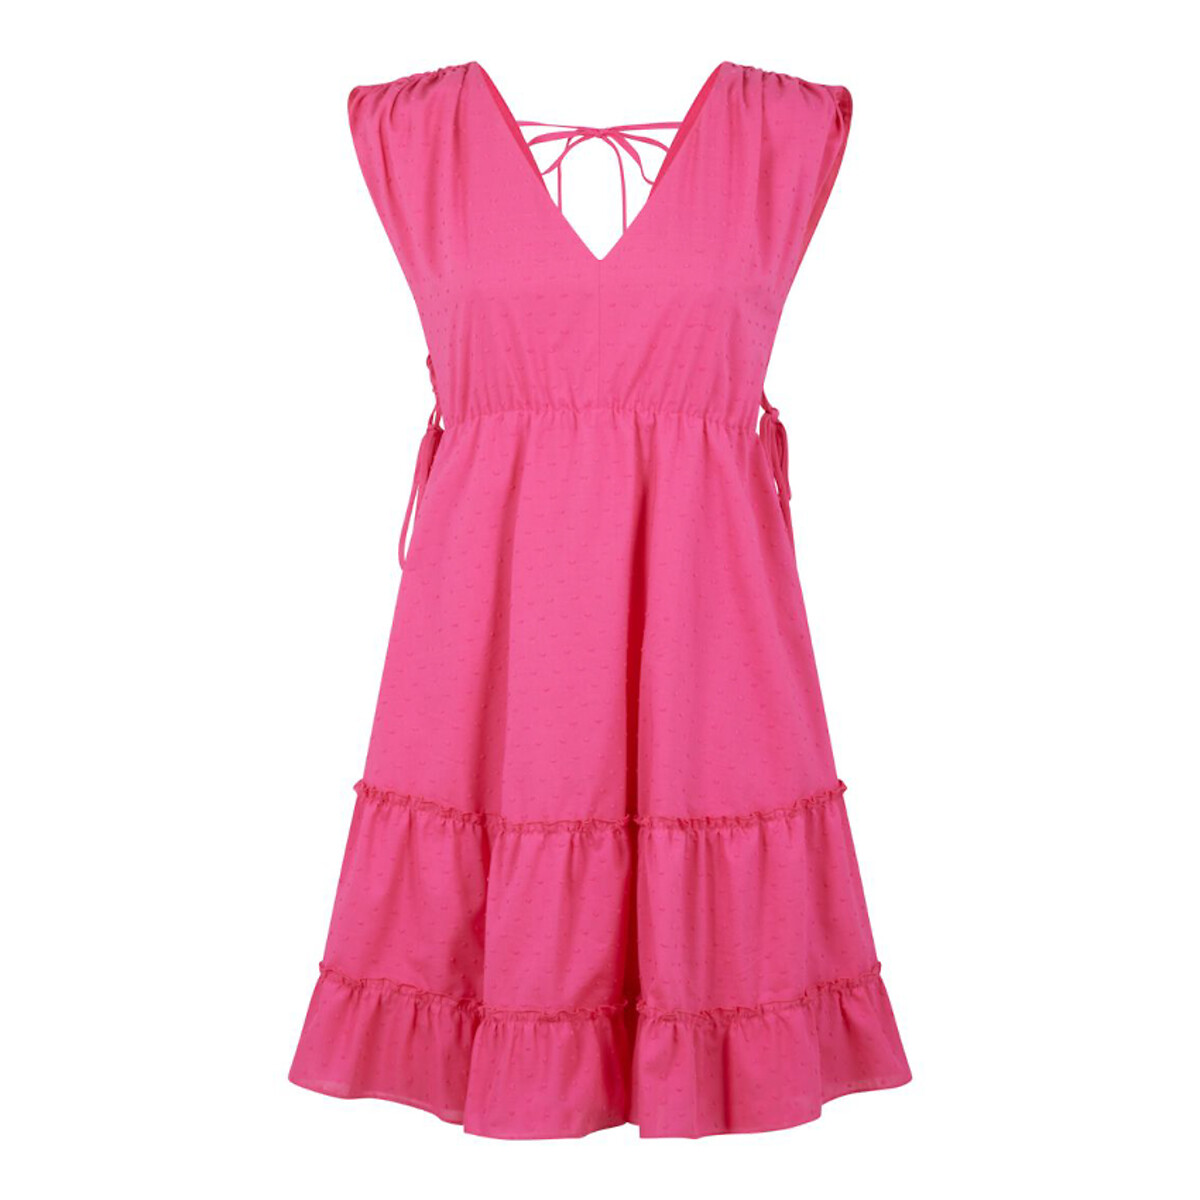 Платье Из хлопка с вышивкой гладью V-образное декольте на спинке 40 розовый LaRedoute, размер 40 - фото 1